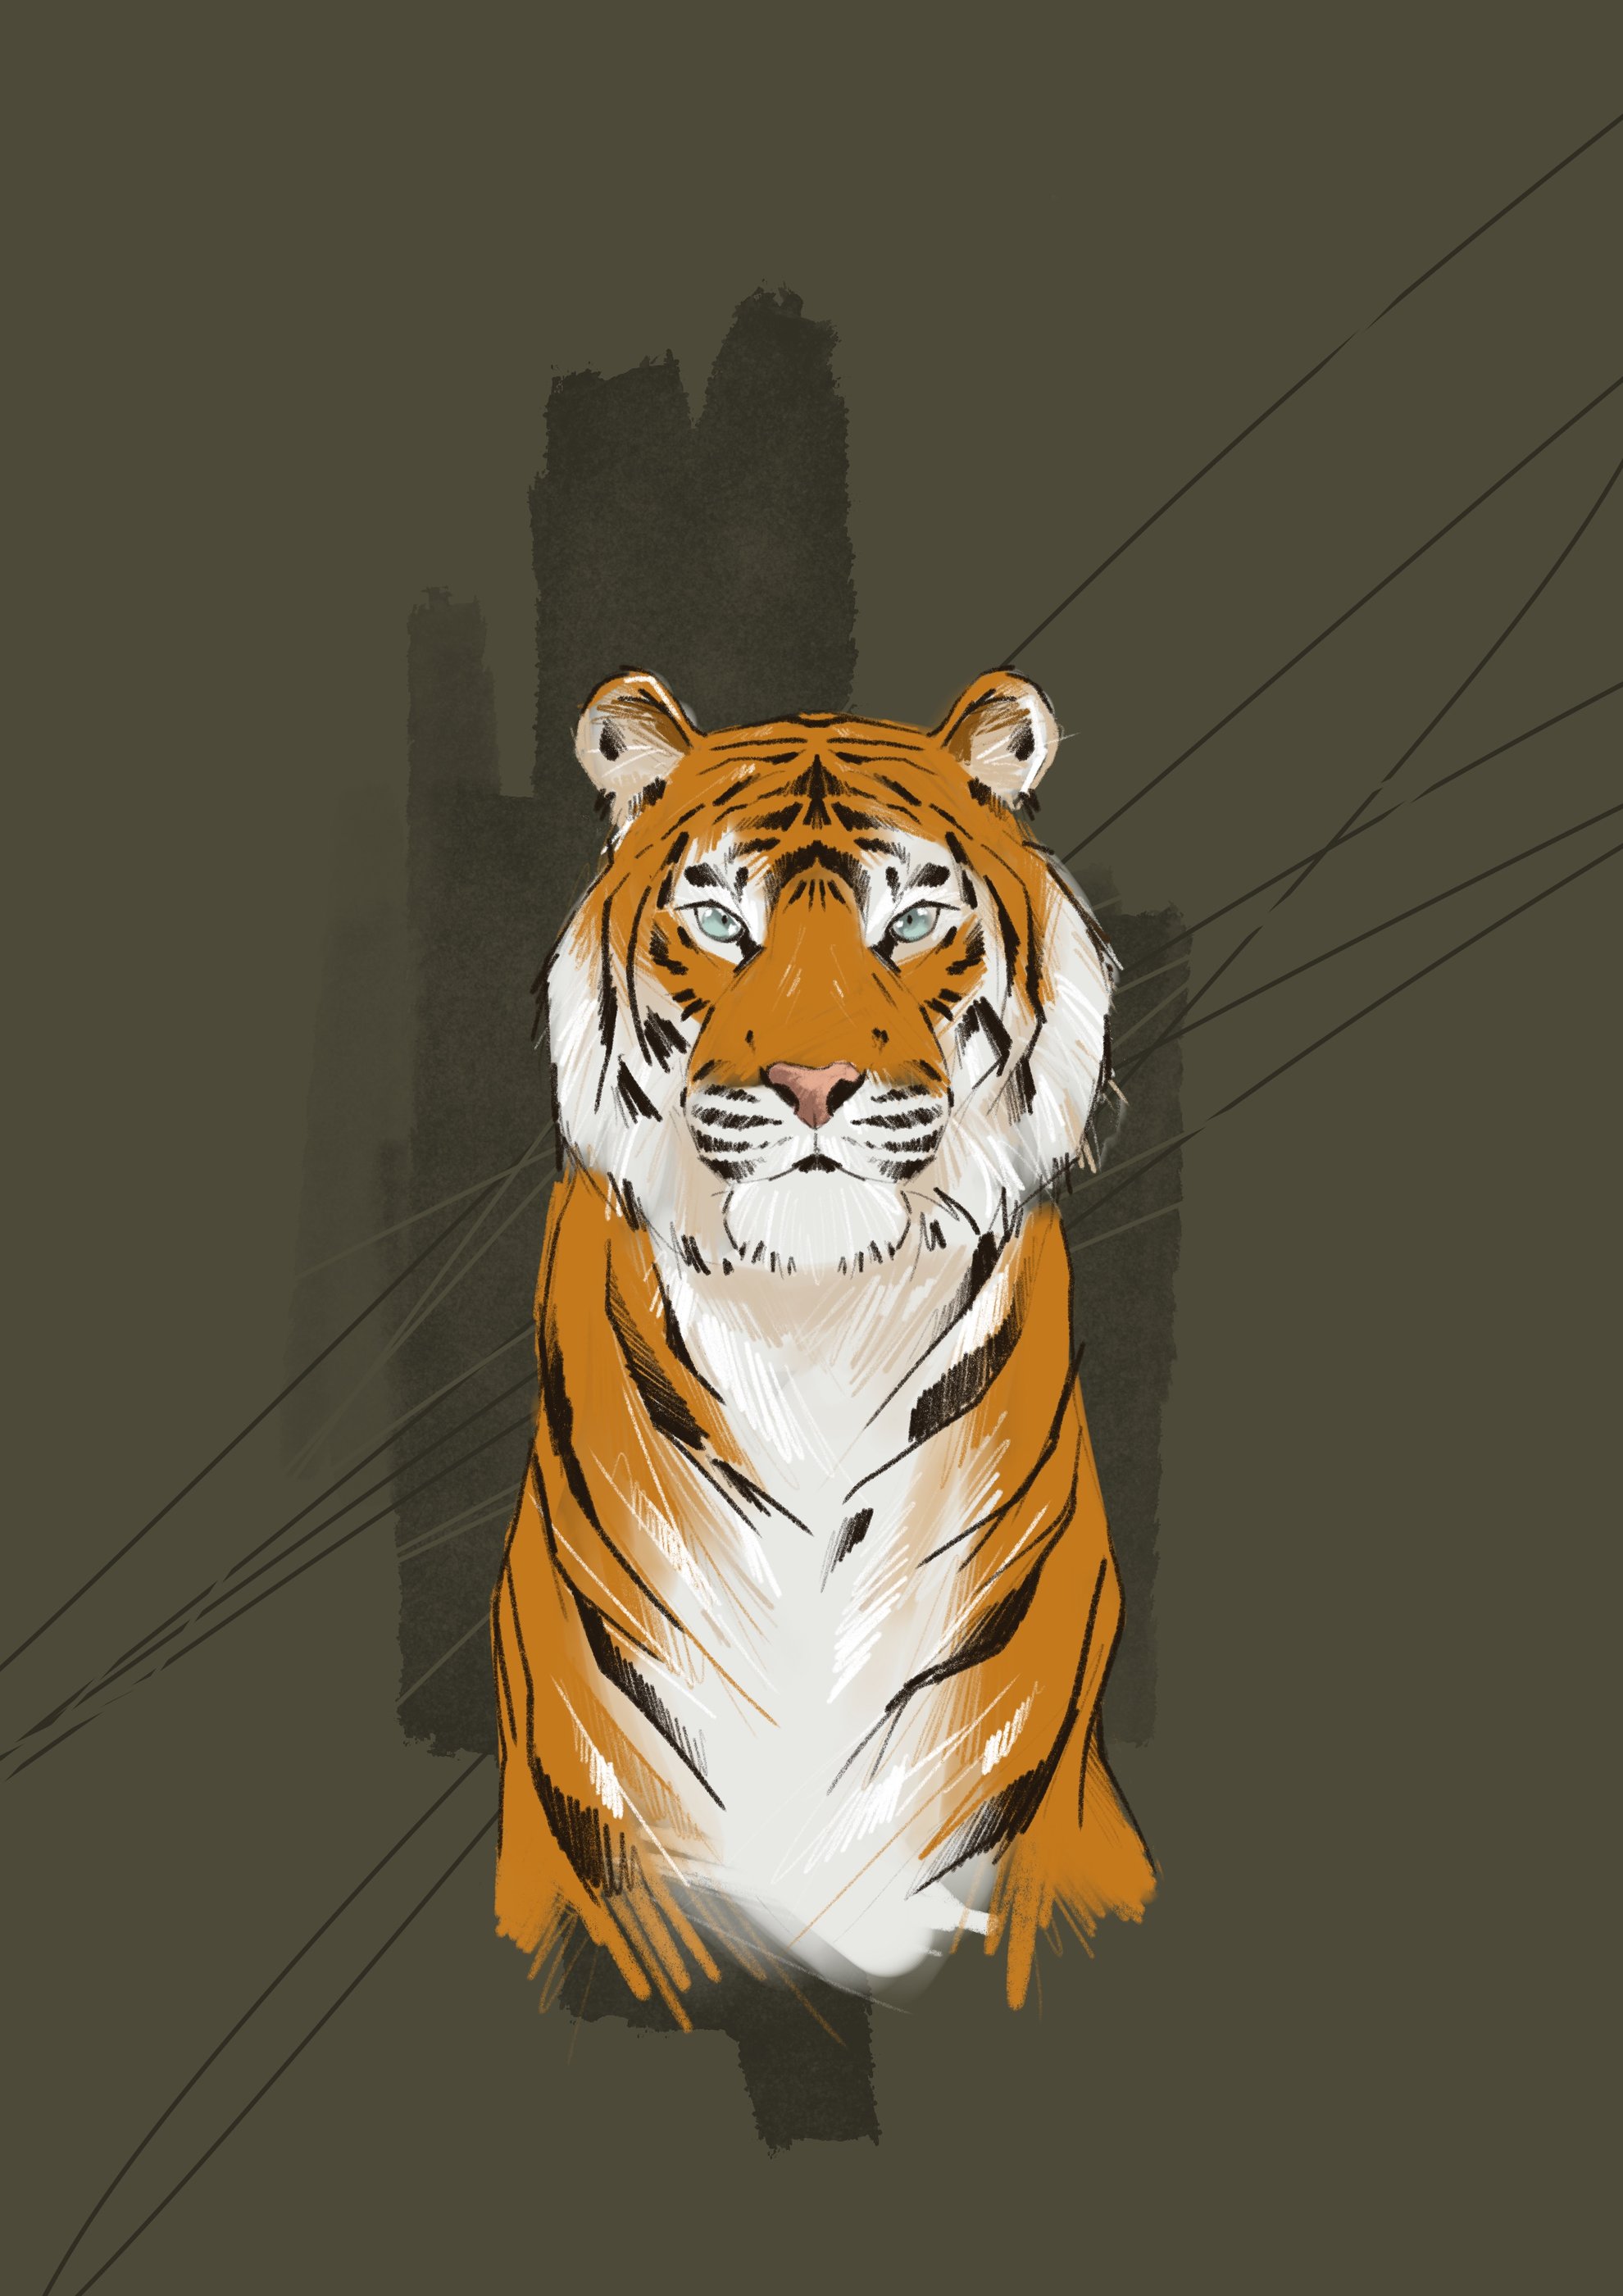 tigre.jpg